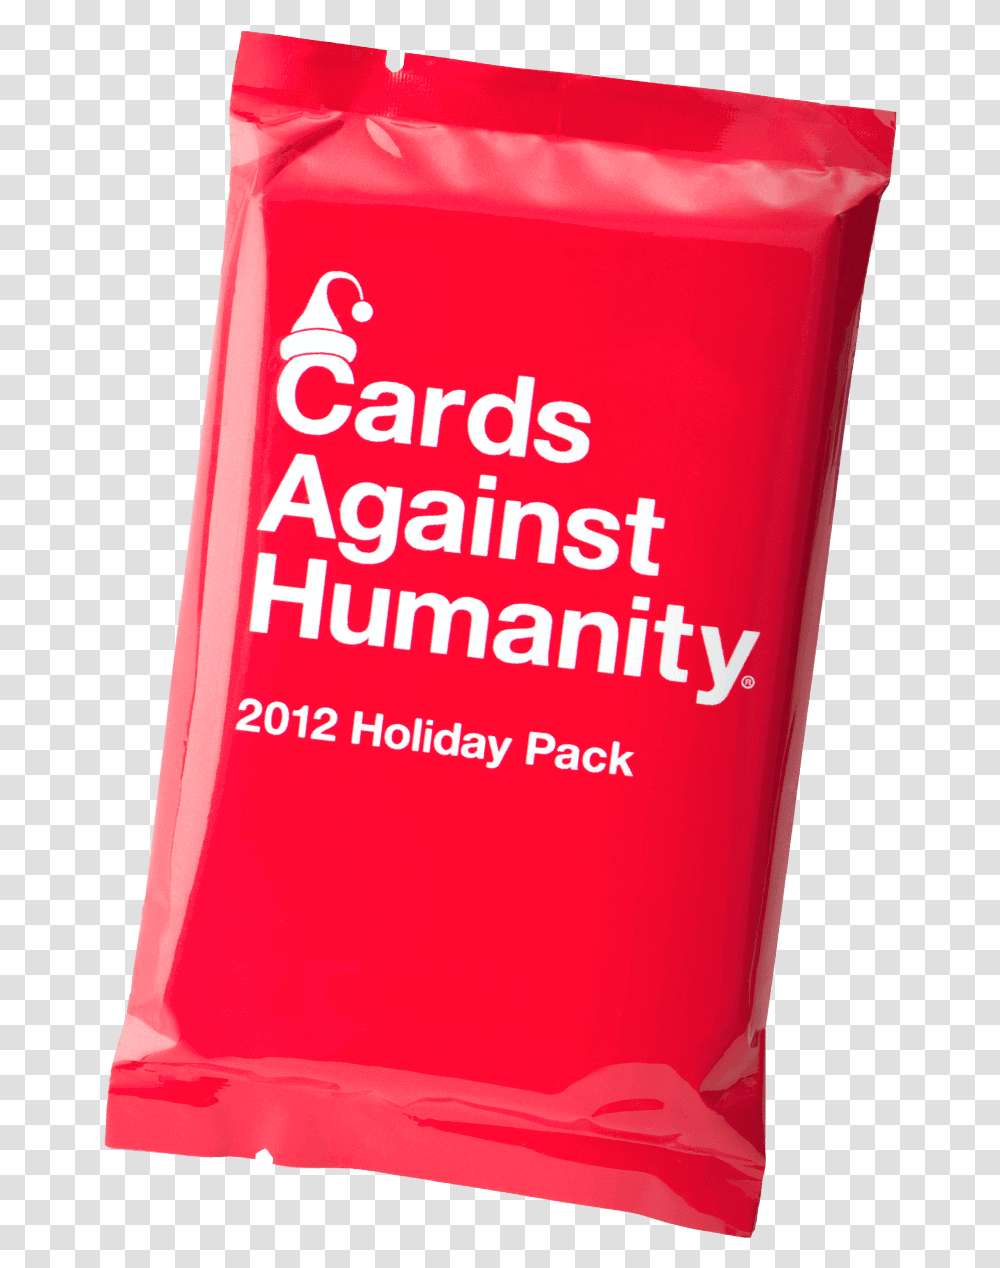 Cards Against Humanity Cards Against Humanity Price, Bottle, Beverage, Tin Transparent Png